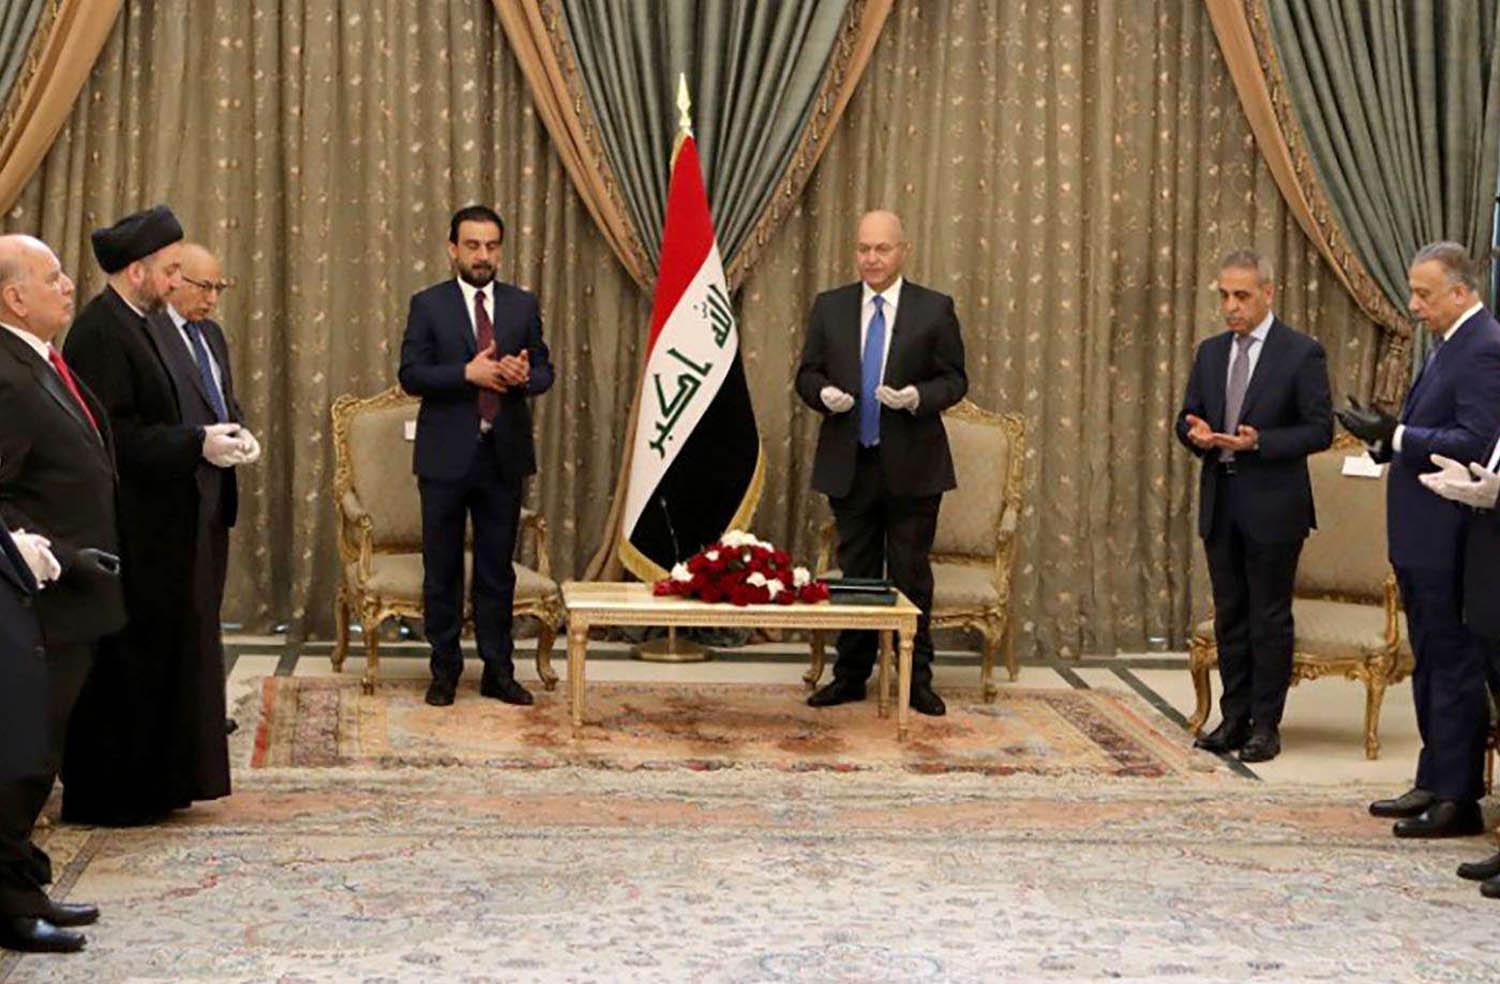 الرئيس العراقي برهم صالح يقرأ الفاتحة بجانب كبار السياسيين العراقيين اثناء تكليف مصطفى الكاظمي بالحكومة